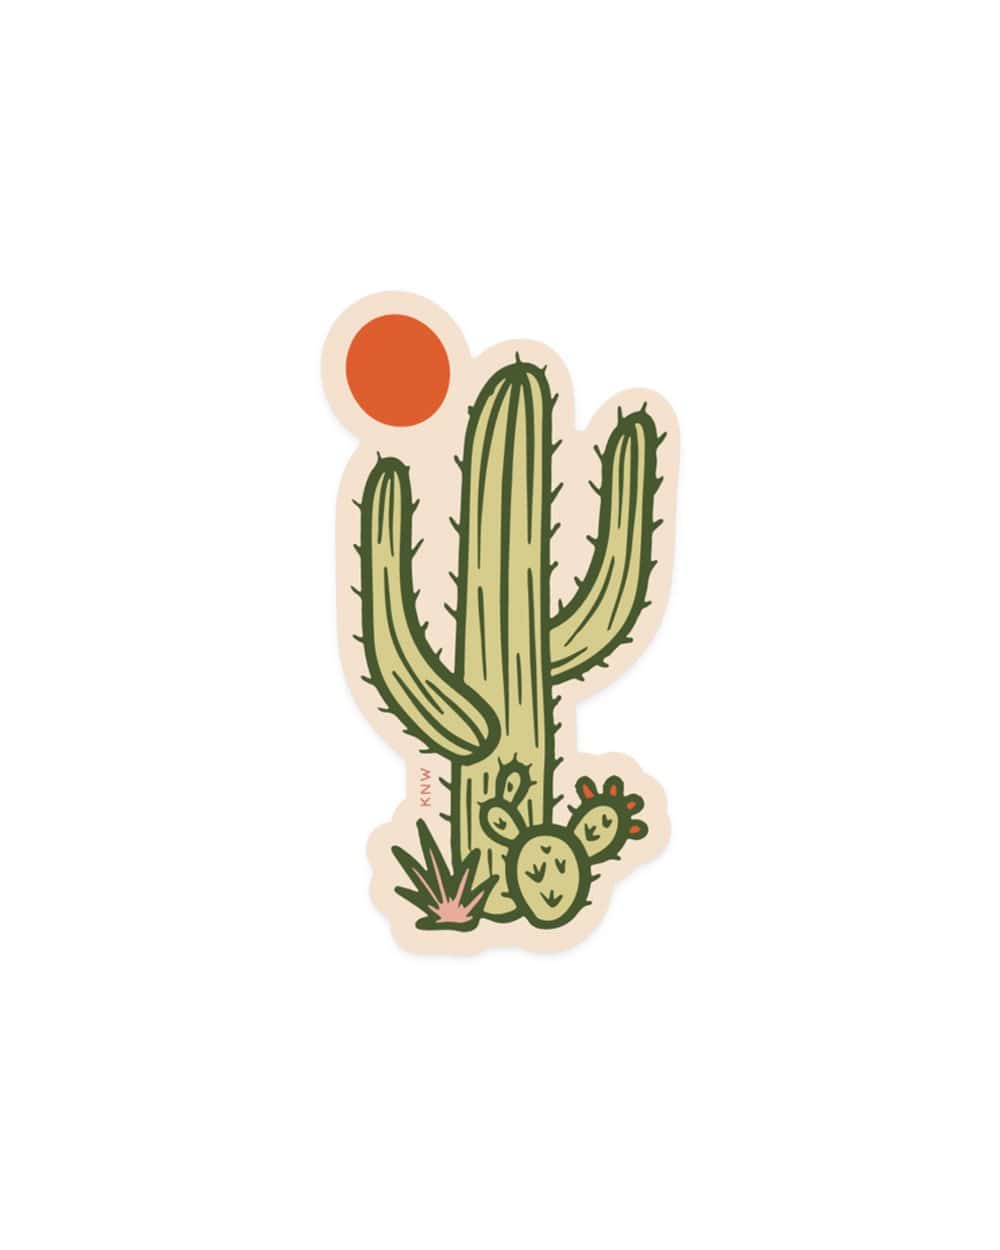 Sunny Saguaro | Sticker